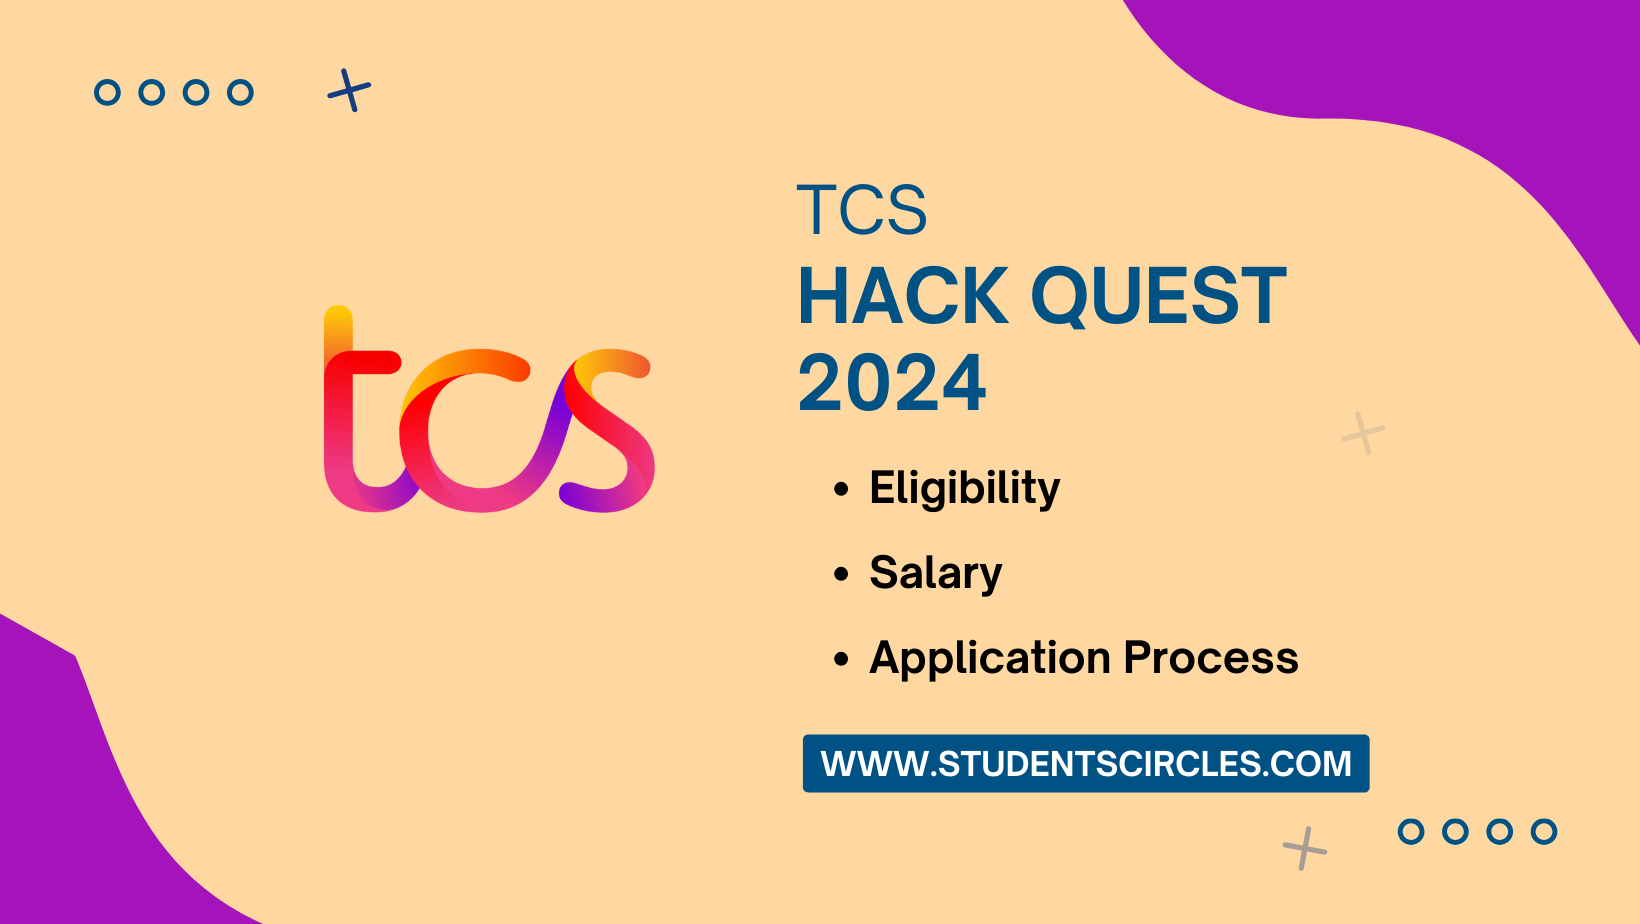 TCS HackQuest